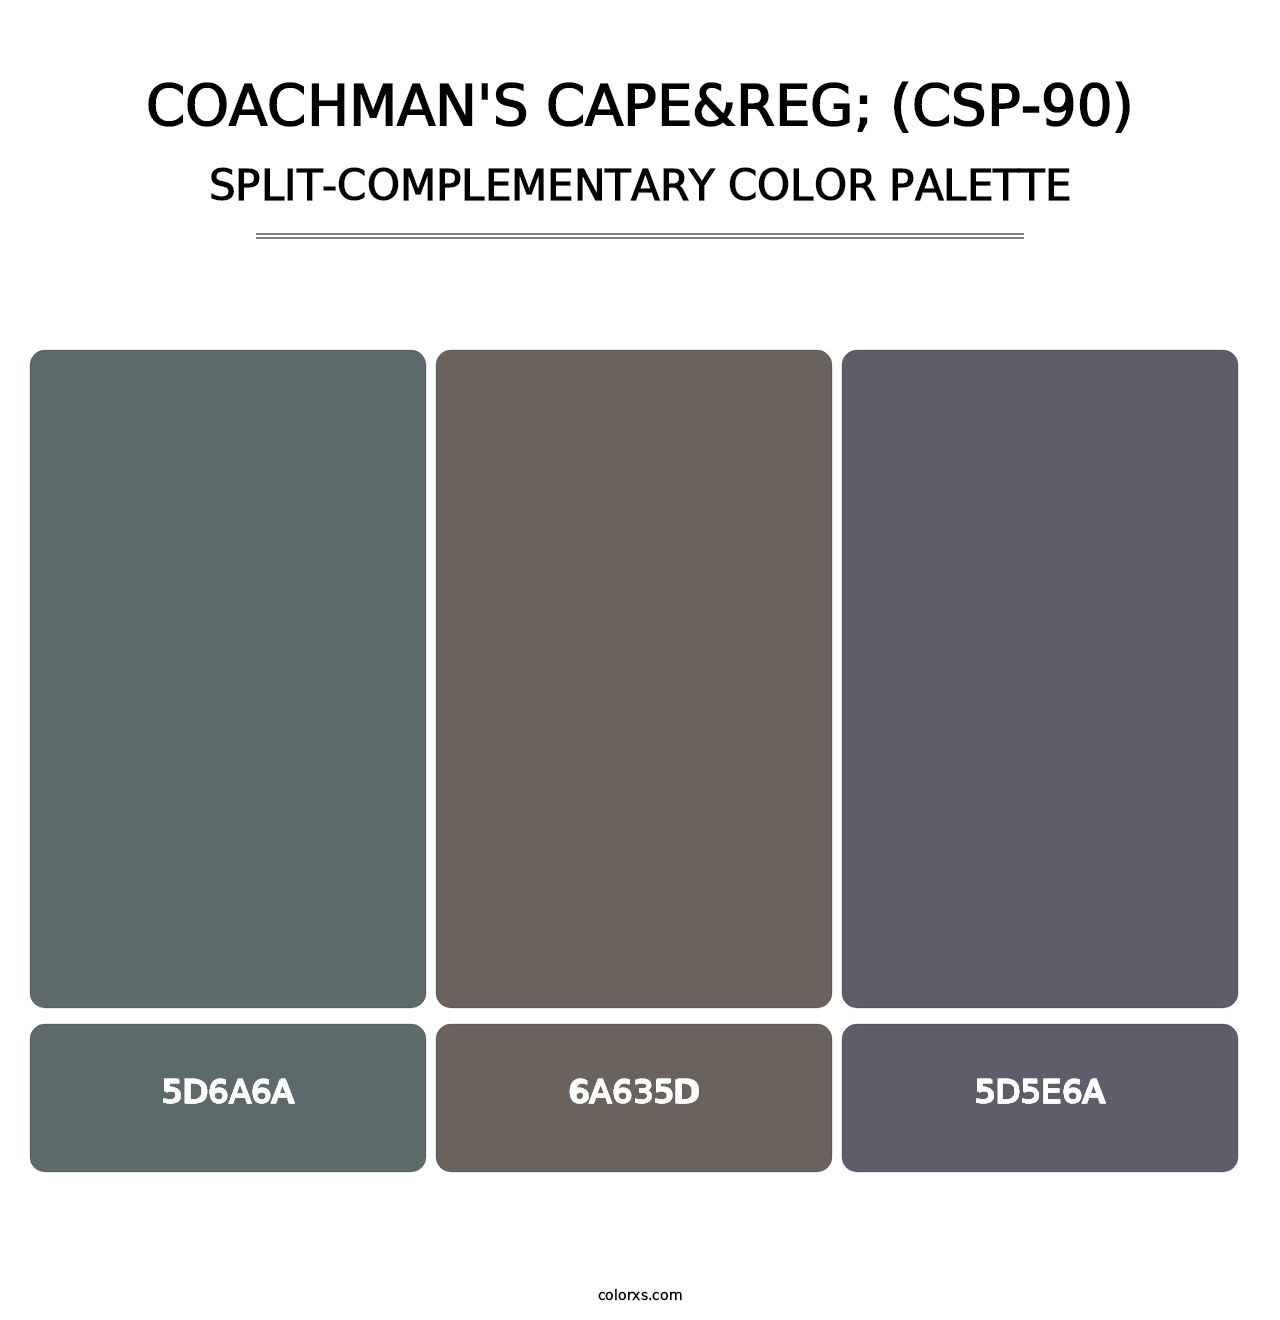 Coachman's Cape&reg; (CSP-90) - Split-Complementary Color Palette